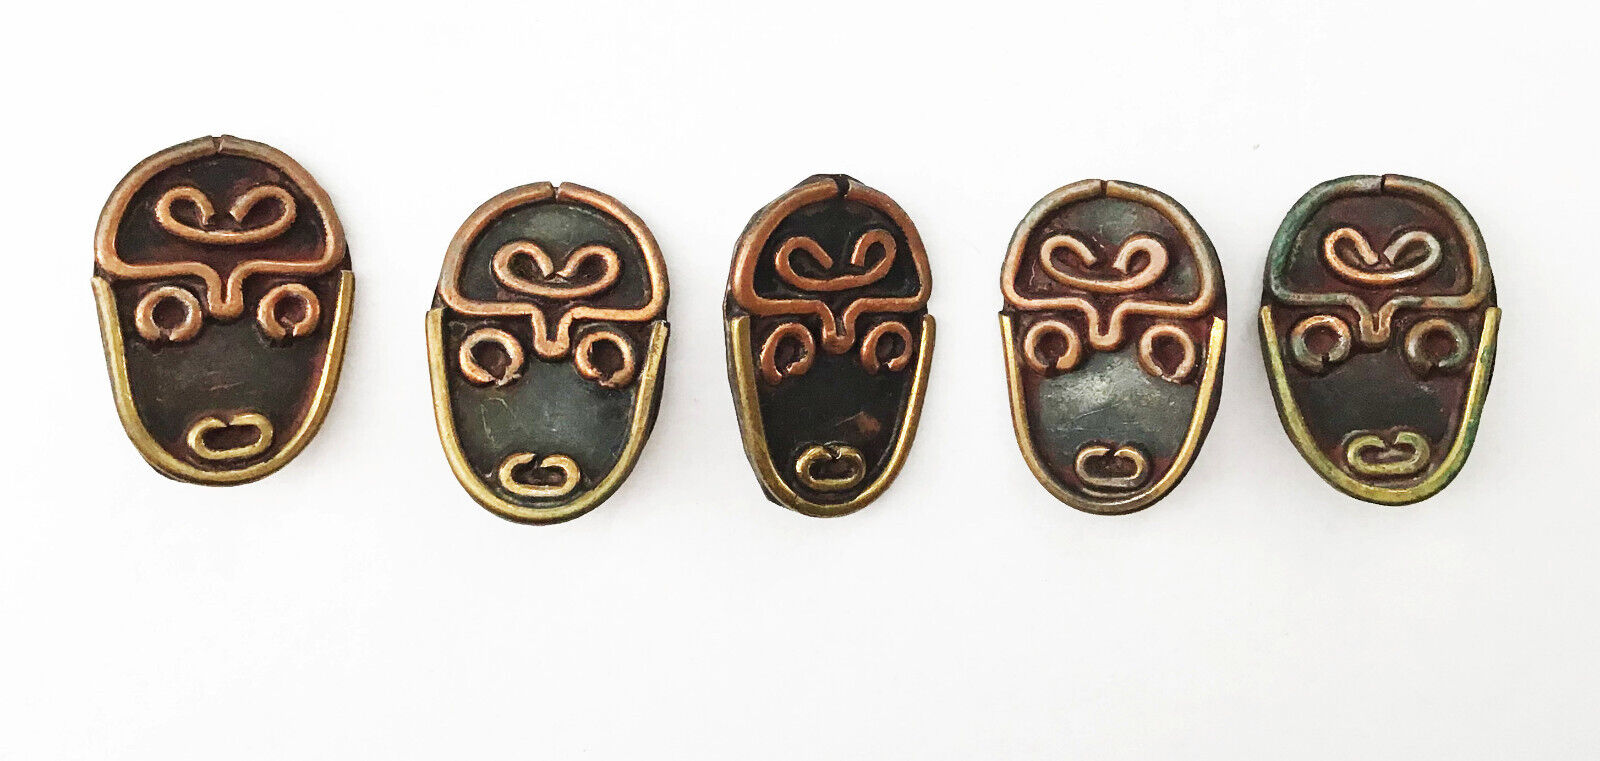 5 Vintage Handmade Mask Buttons African? Islands? Australian? Copper & Brass